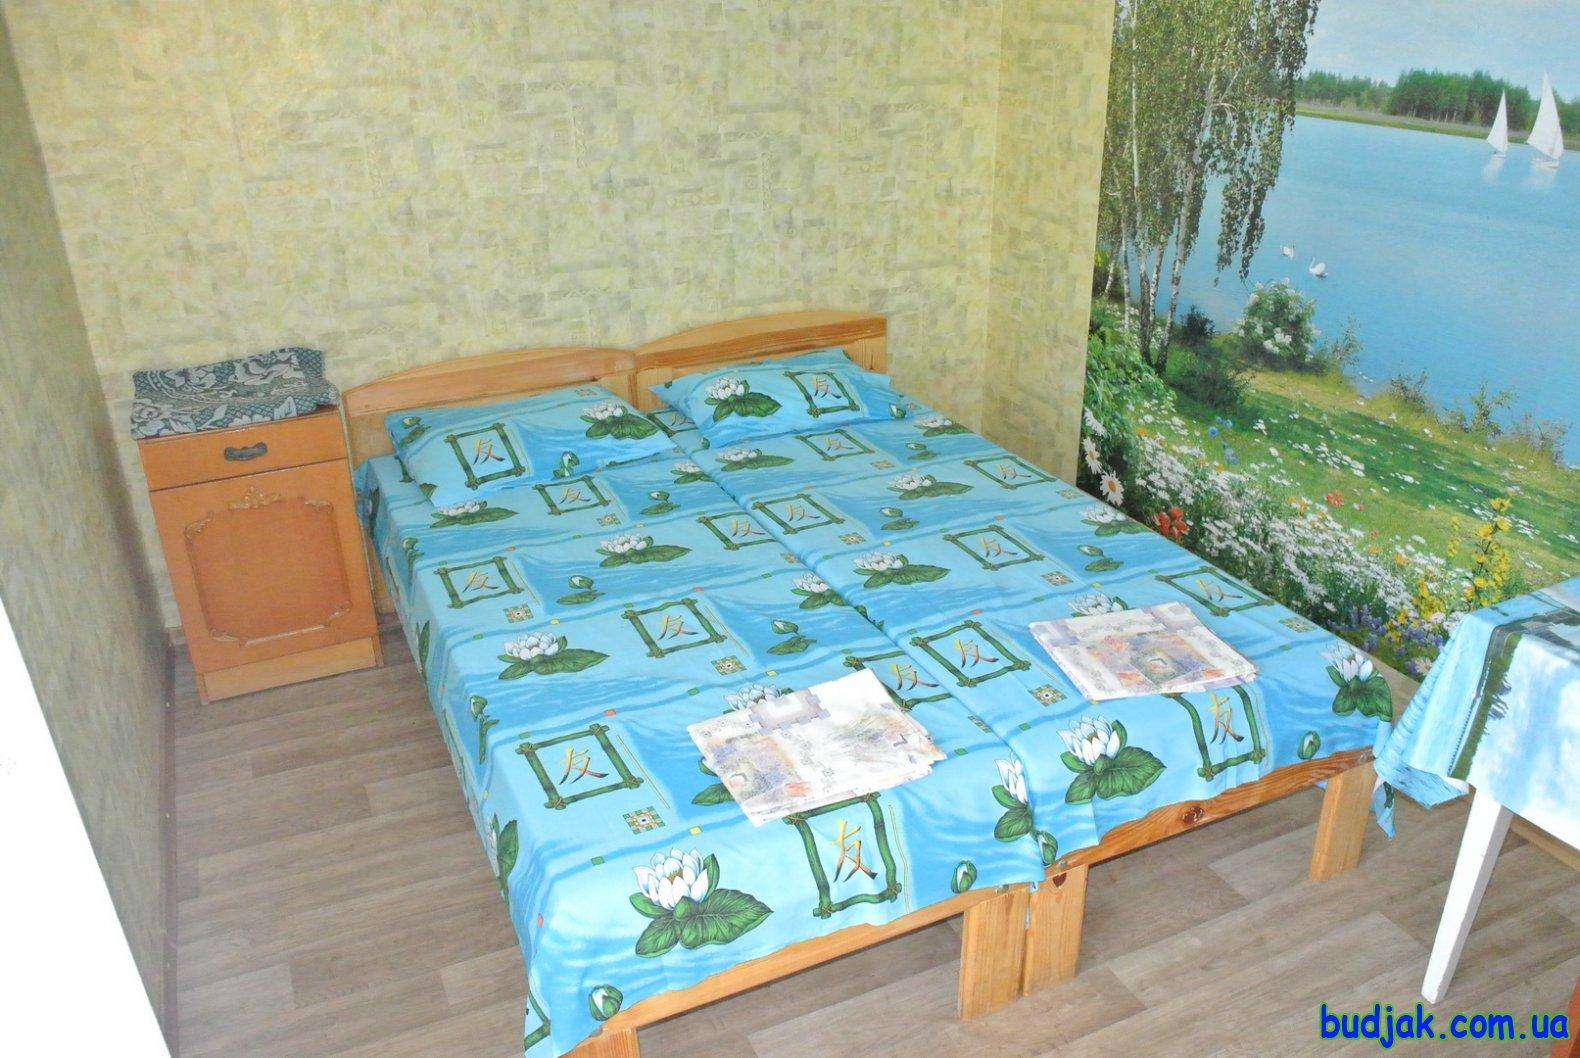 Частный коттедж отдыха «Дубовая роща» на курорте Лебедевка. Фото № 10973